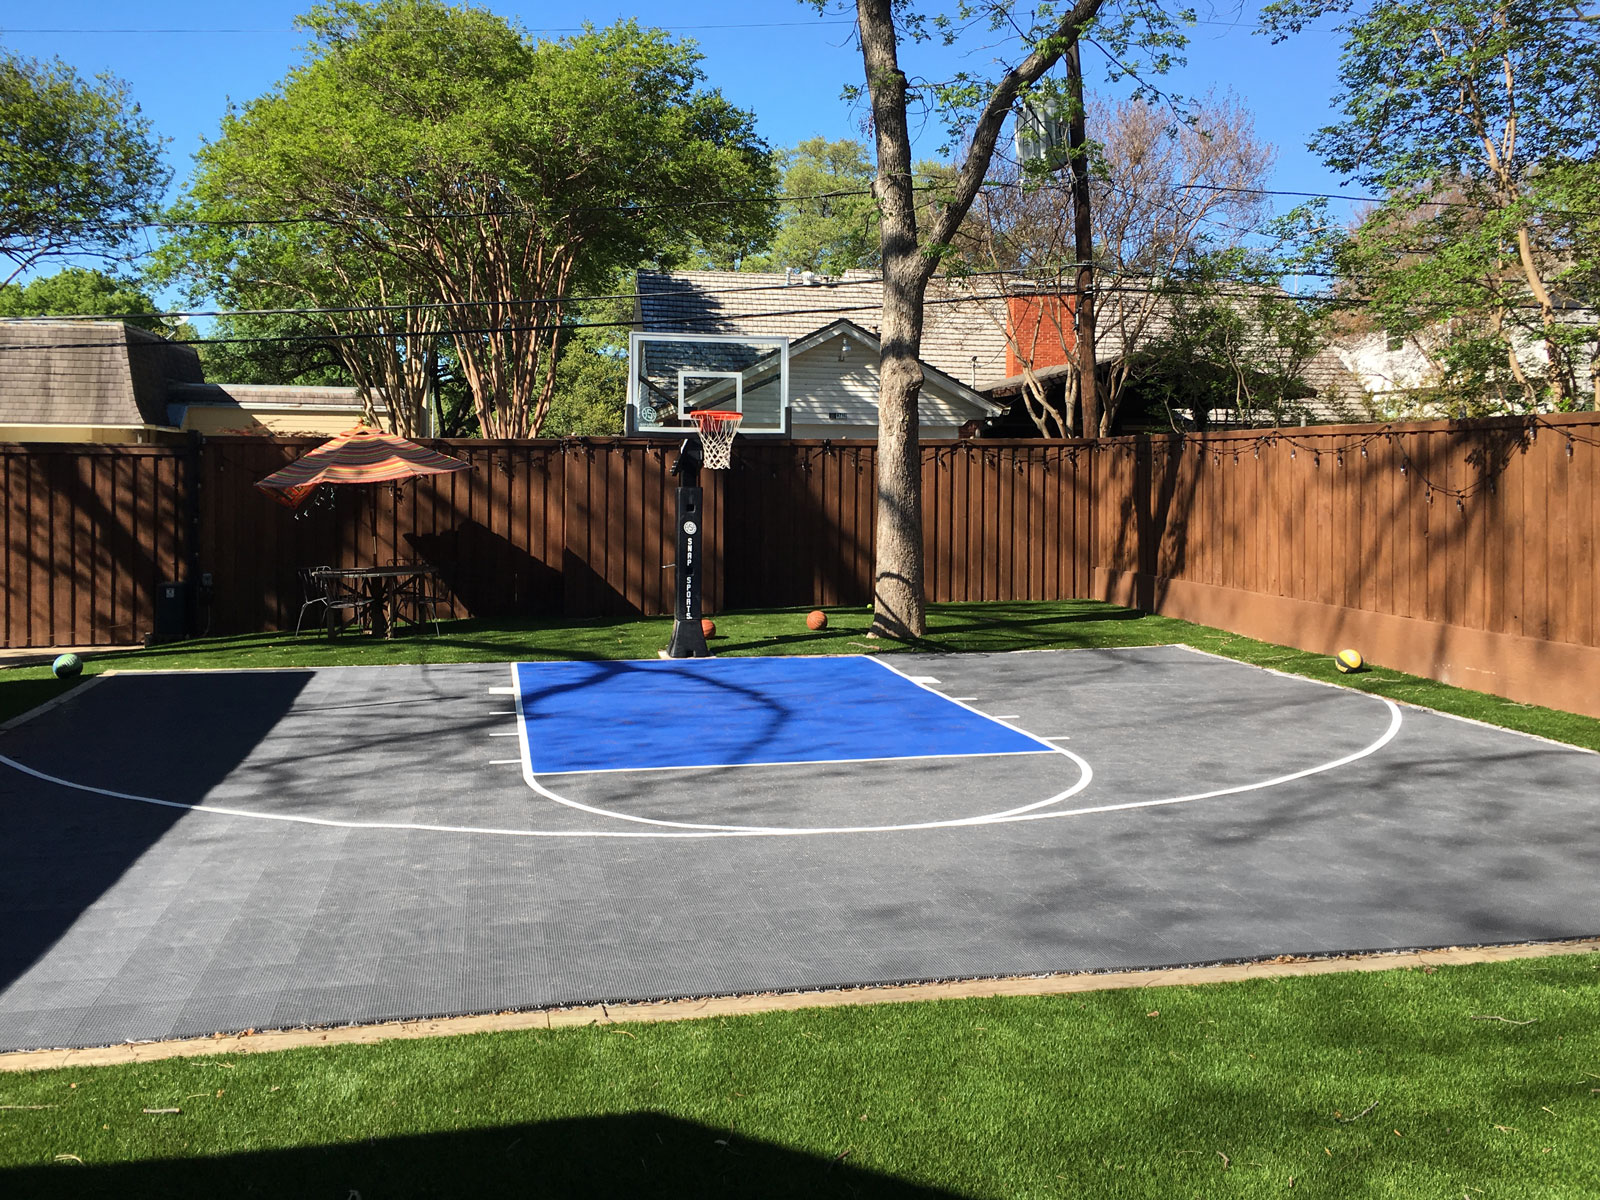 50 #39 x 30 #39 Basketball Half Court DunkStar DIY Backyard Courts